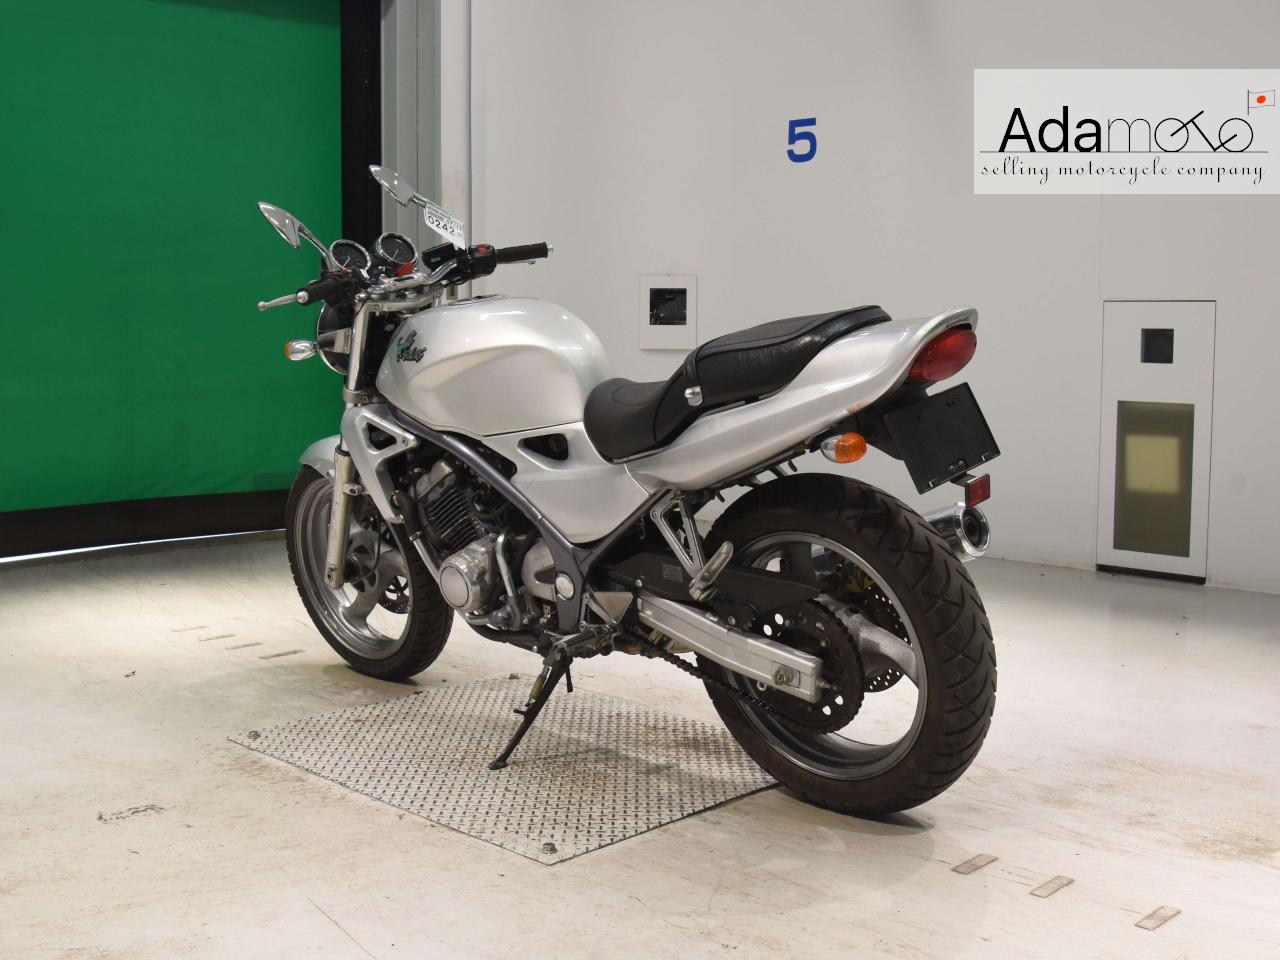 Kawasaki BALIUS - Adamoto - Motorcycles from Japan